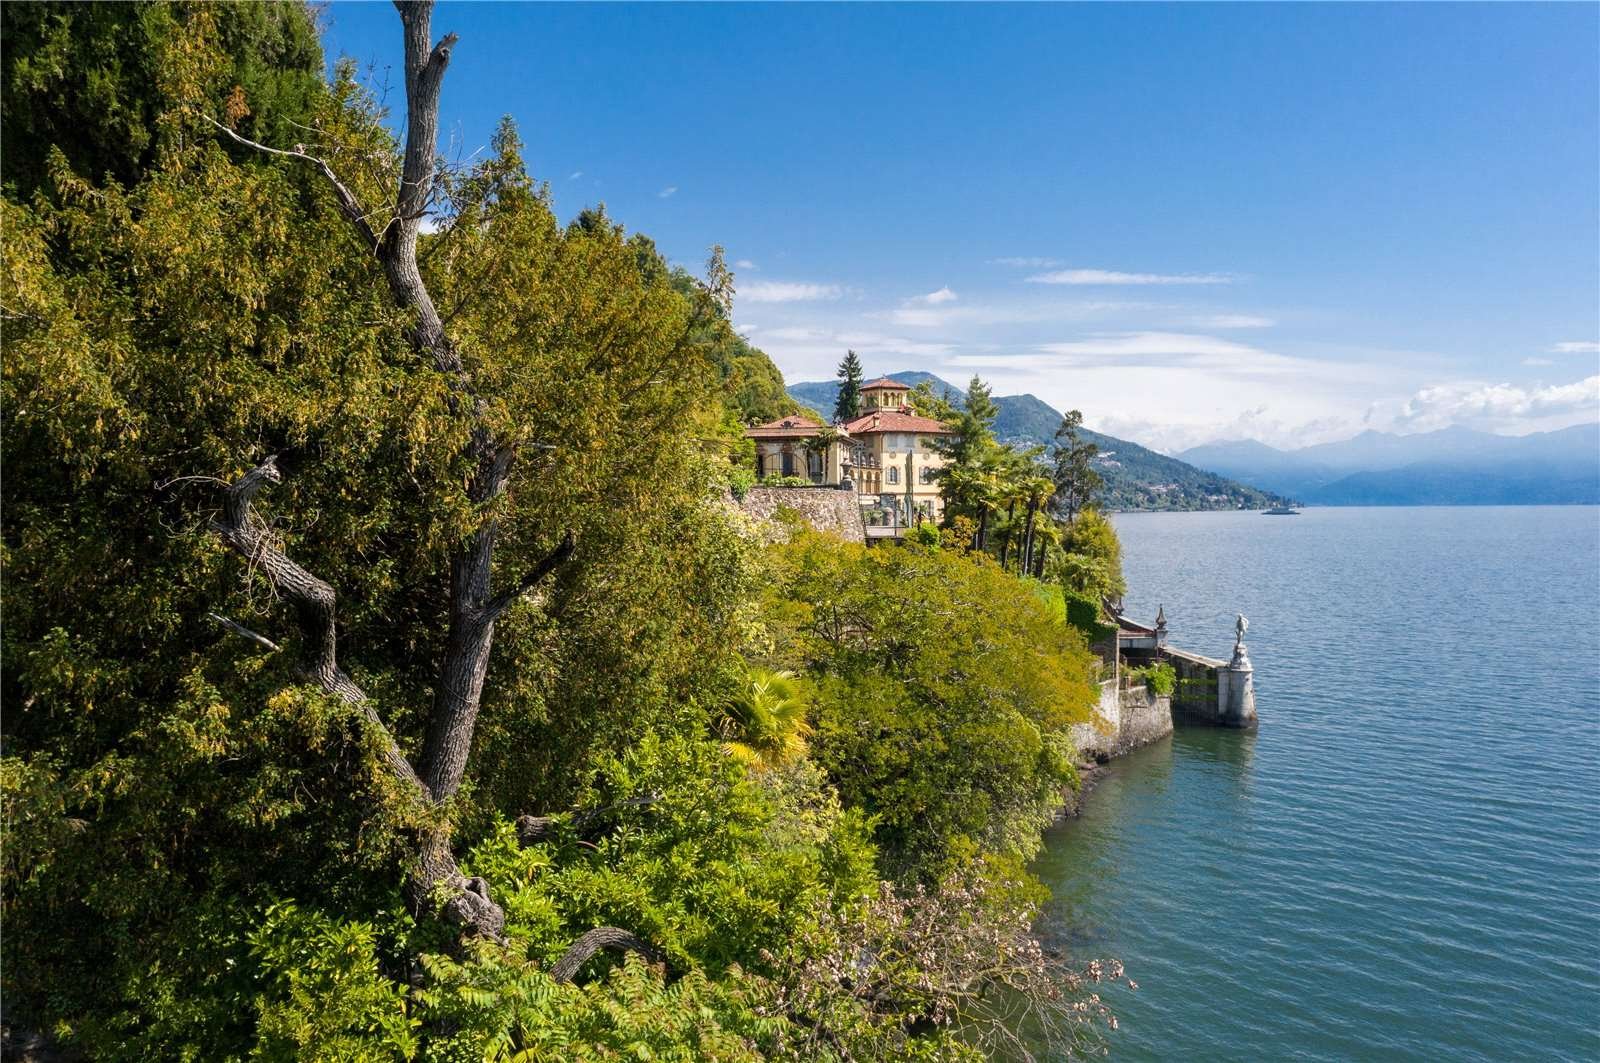 Francis YorkVilla L'Eremitaggio: Historic Villa On Lake Maggiore 1.jpg